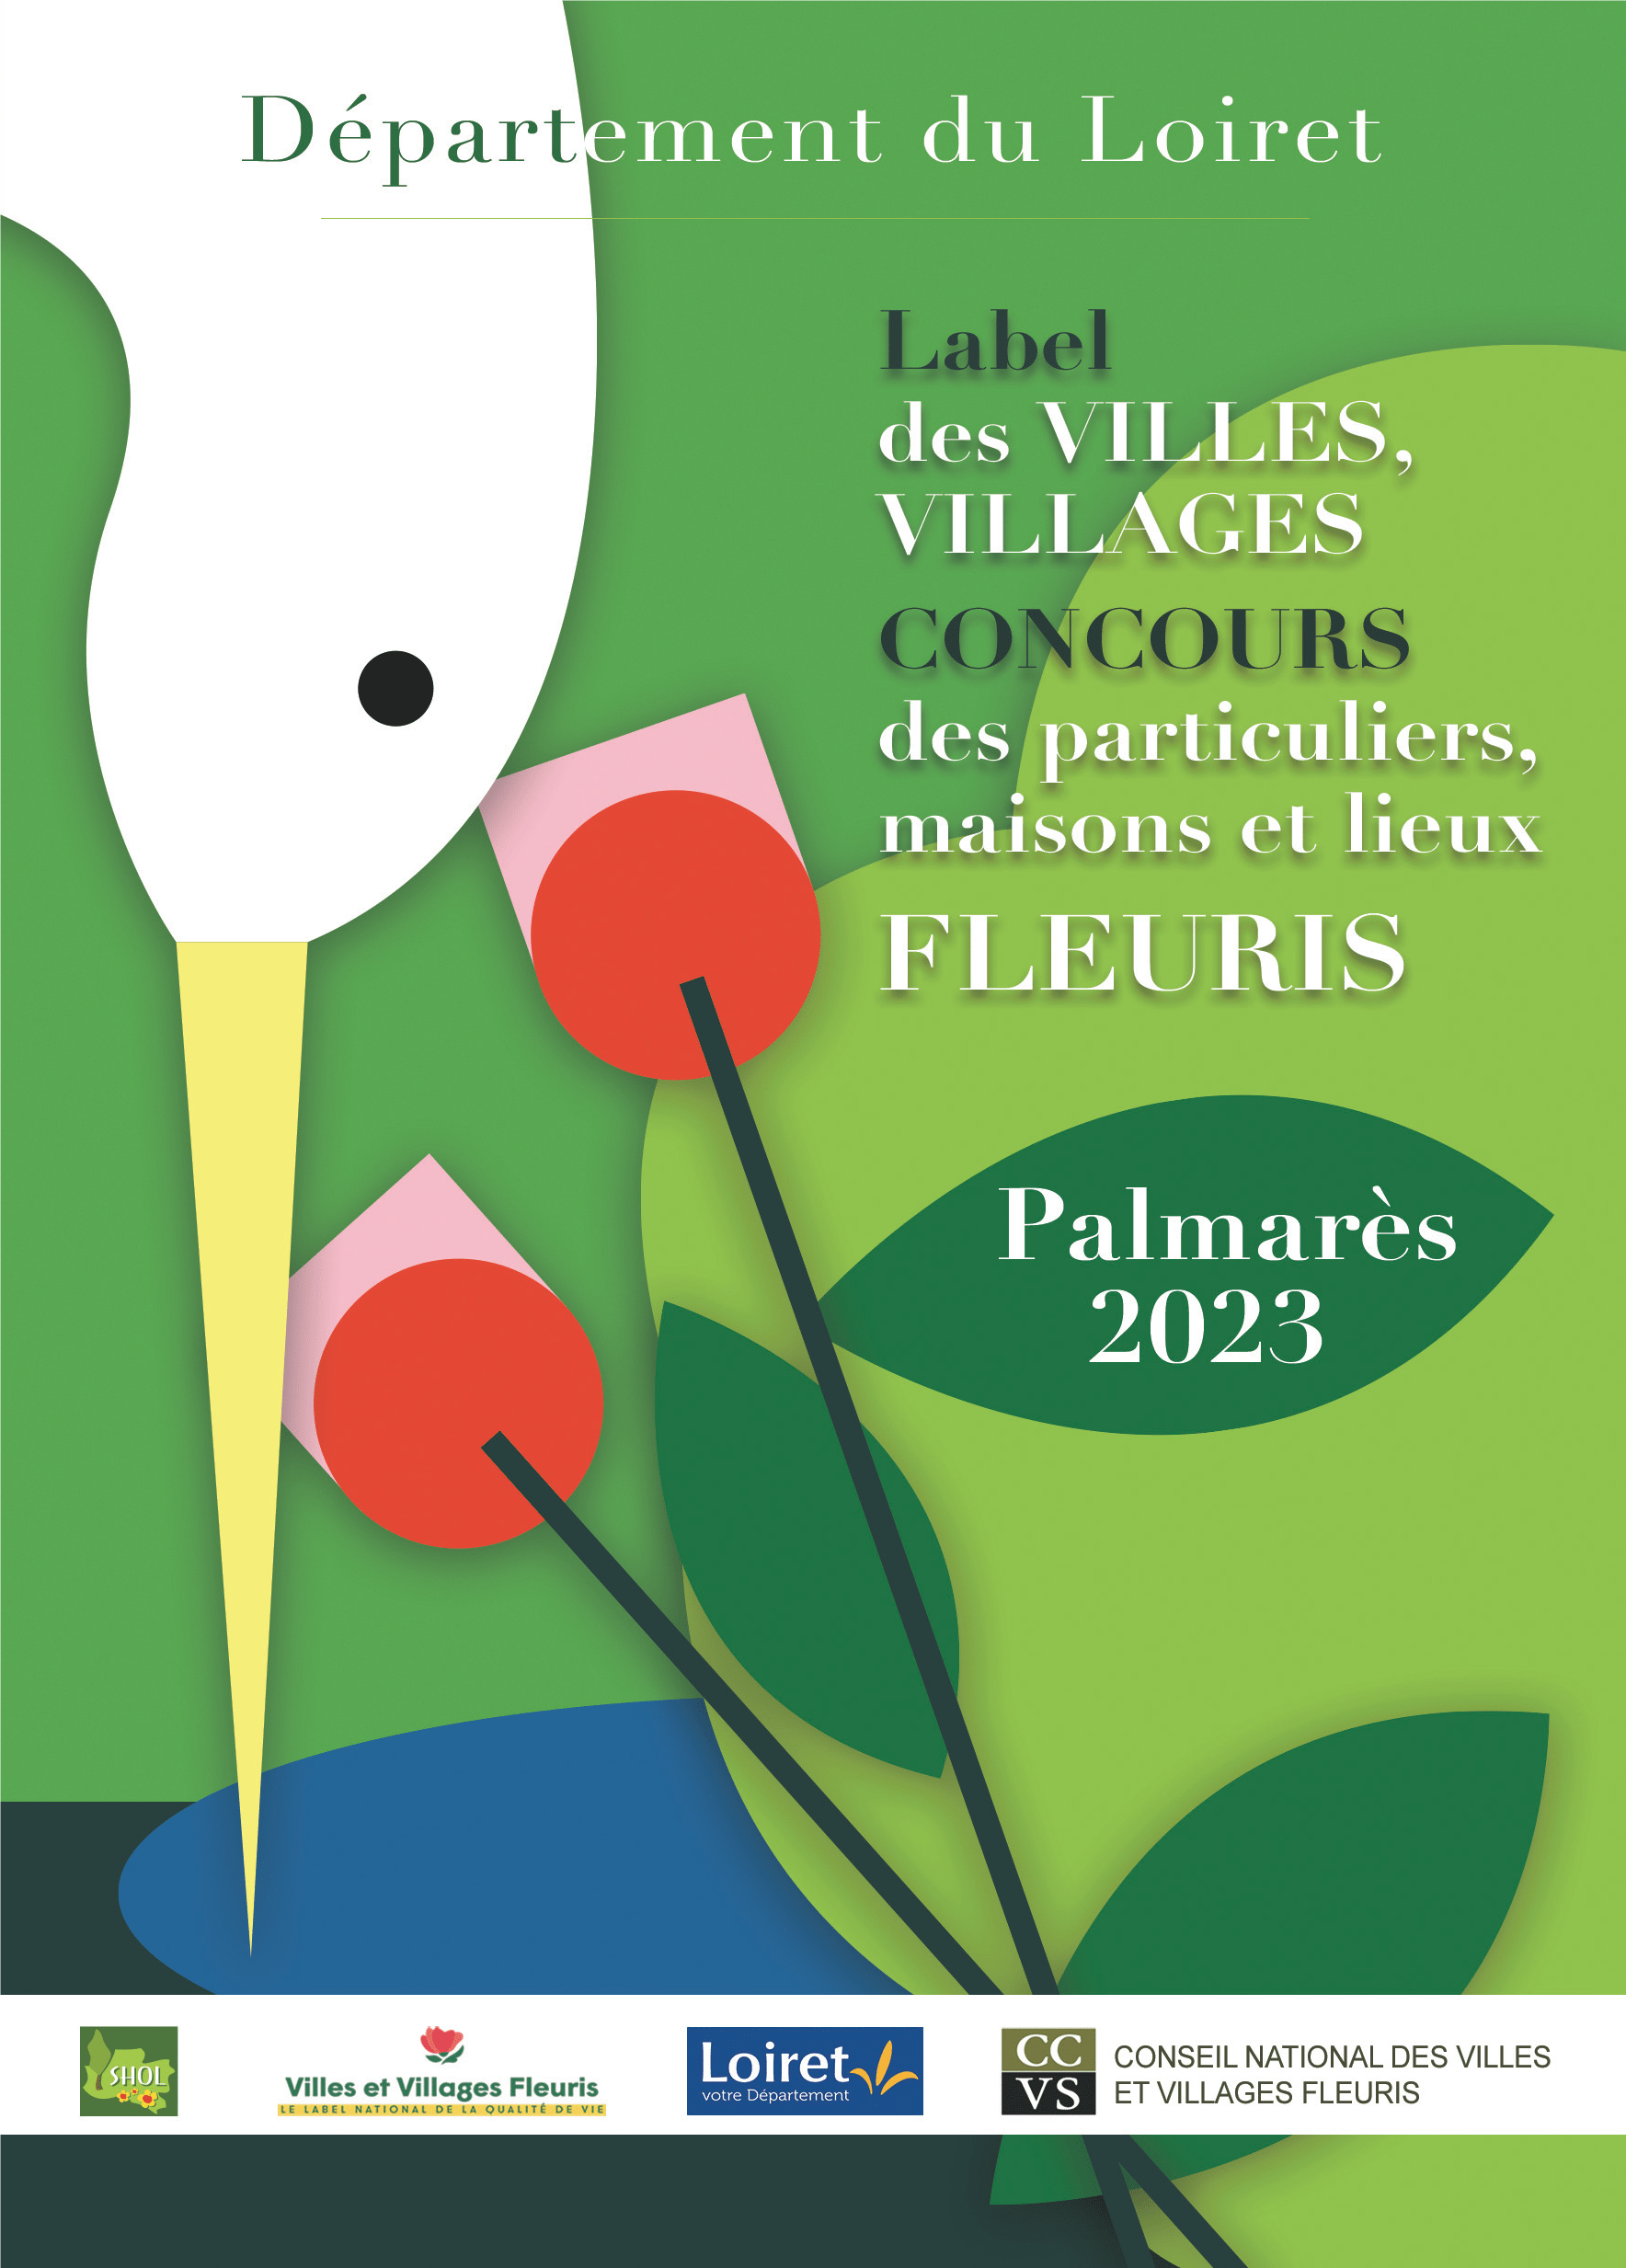 Le palmarès 2023 des « Villes et Villages fleuris du Loiret" dévoilé